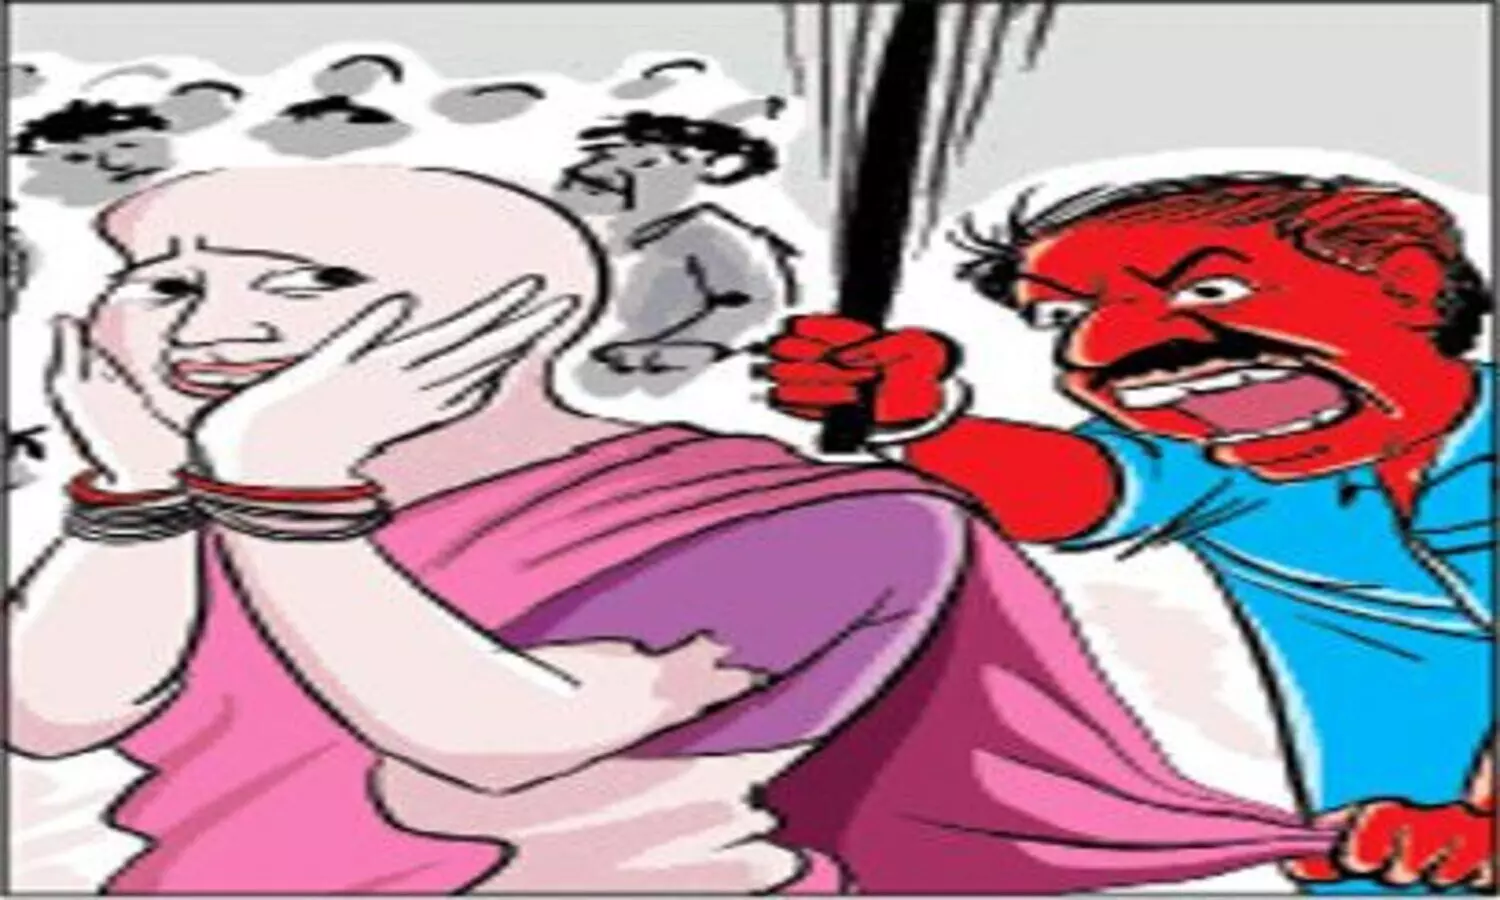 बिहार में बकरी चोरी की सजा: 2 महिलाओं समेत 4 को पीटा, फिर मुंडवाया सिर